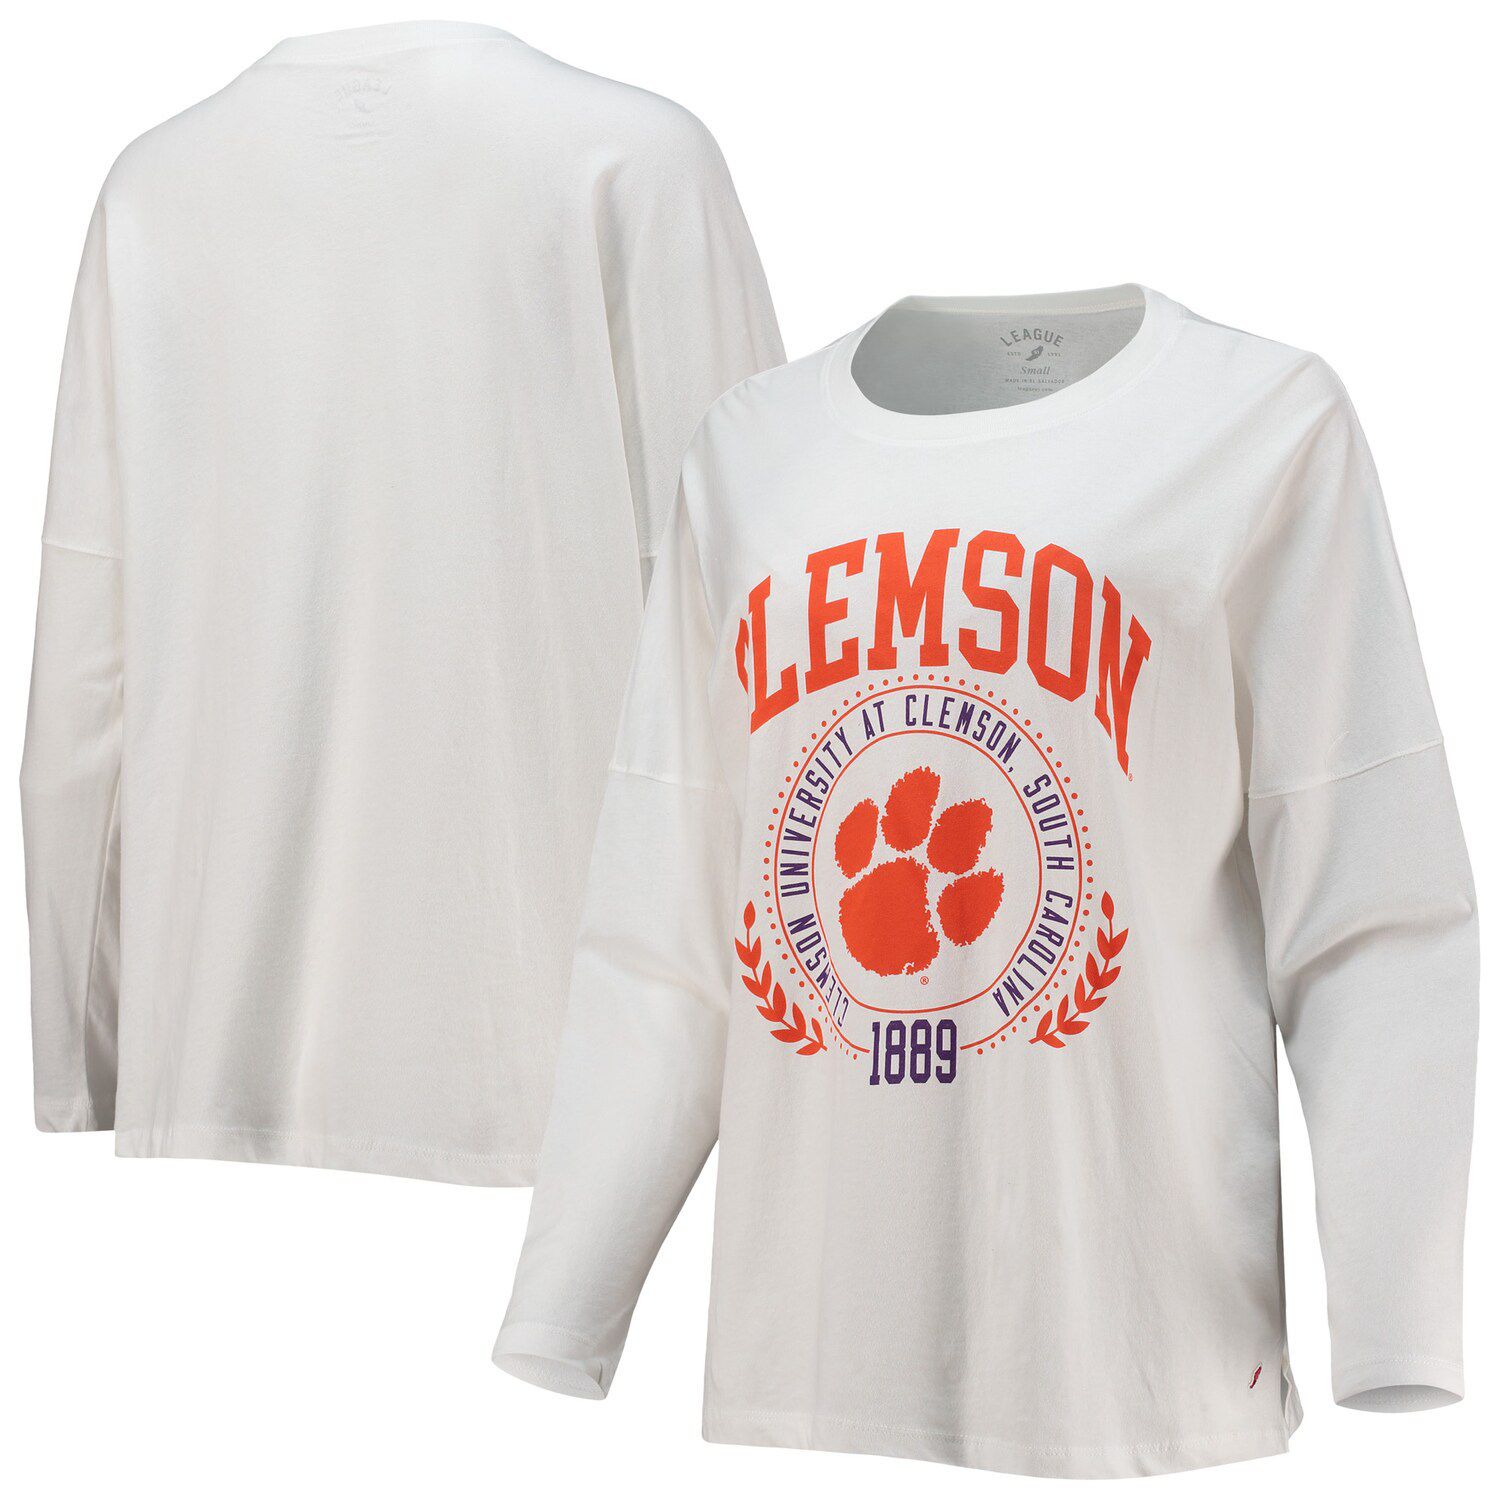 Белая футболка большого размера с длинными рукавами для женской лиги Clemson Tigers Clothesline